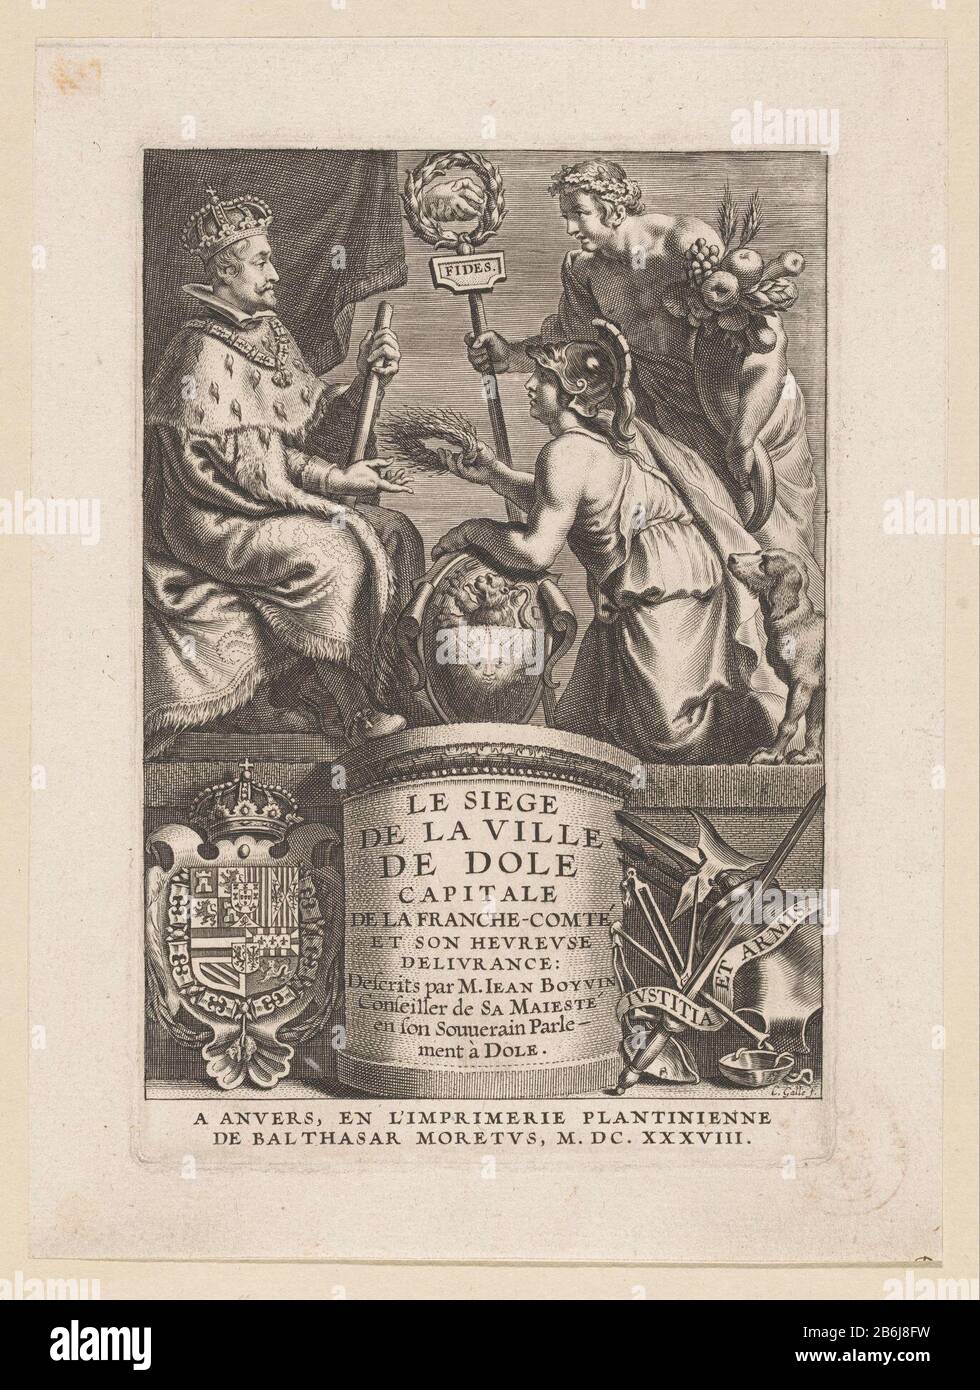 La ville de Dole Philippe IV présente une page de titre de couronne pour J BOYVIN, le siège de la ville de Dole, Anvers 1638 la personnification de la ville de Dole, une femme pétrieuse aux bras de la ville, Philip IV présente une couronne d'oreilles de maïs. Philippe IV reçoit la couronne, il siège sur un trône avec un bâton dans sa main. Derrière la ville de Dole, un jeune homme qui symbolise la récupération de la ville après le siège. Sous les bras de la Maison des Habsbourg et à droite la devise de la ville Dole: Iustitia et arms. Fabricant : printmaker Cornelis Galle (I) (bâtiment classé) pour le dessin Erasmus Quellinus (II) Banque D'Images